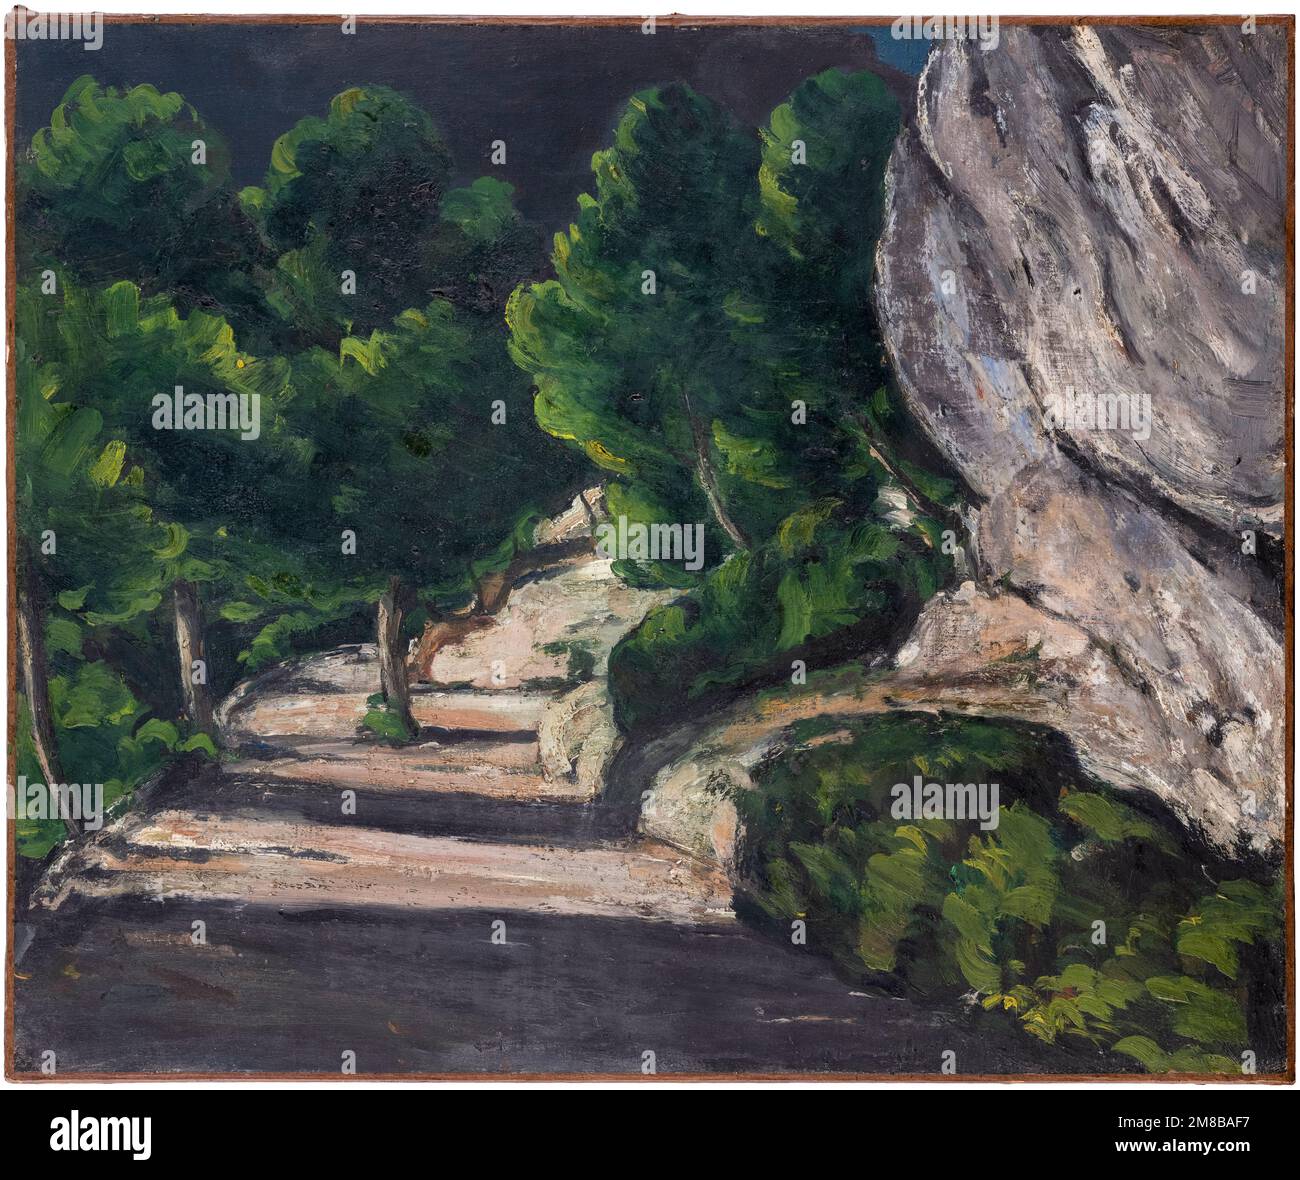 Paul Cezanne, Paysage : route avec arbres dans les montagnes Rocheuses, peinture à l'huile sur toile, 1870-1871 Banque D'Images